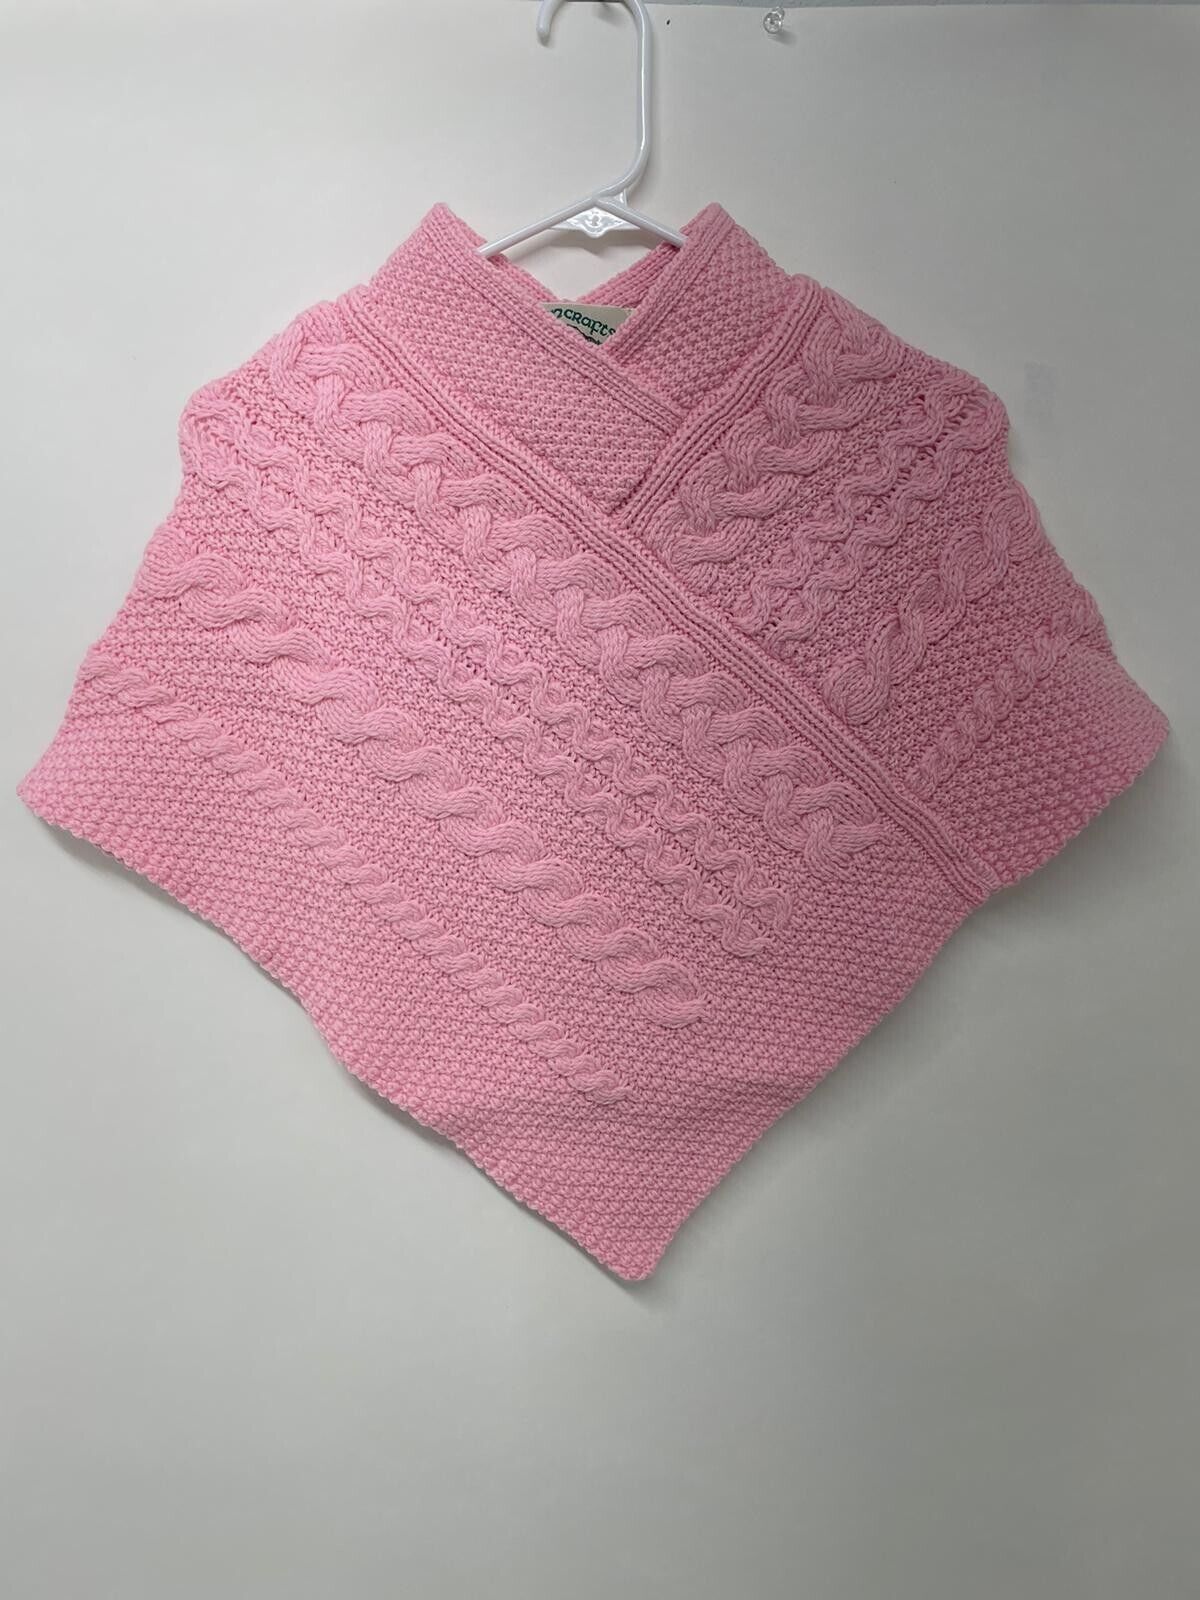 Aran Crafts Girls M Kids 4-8 Poncho Pullover Sweater Pink Merino Wool